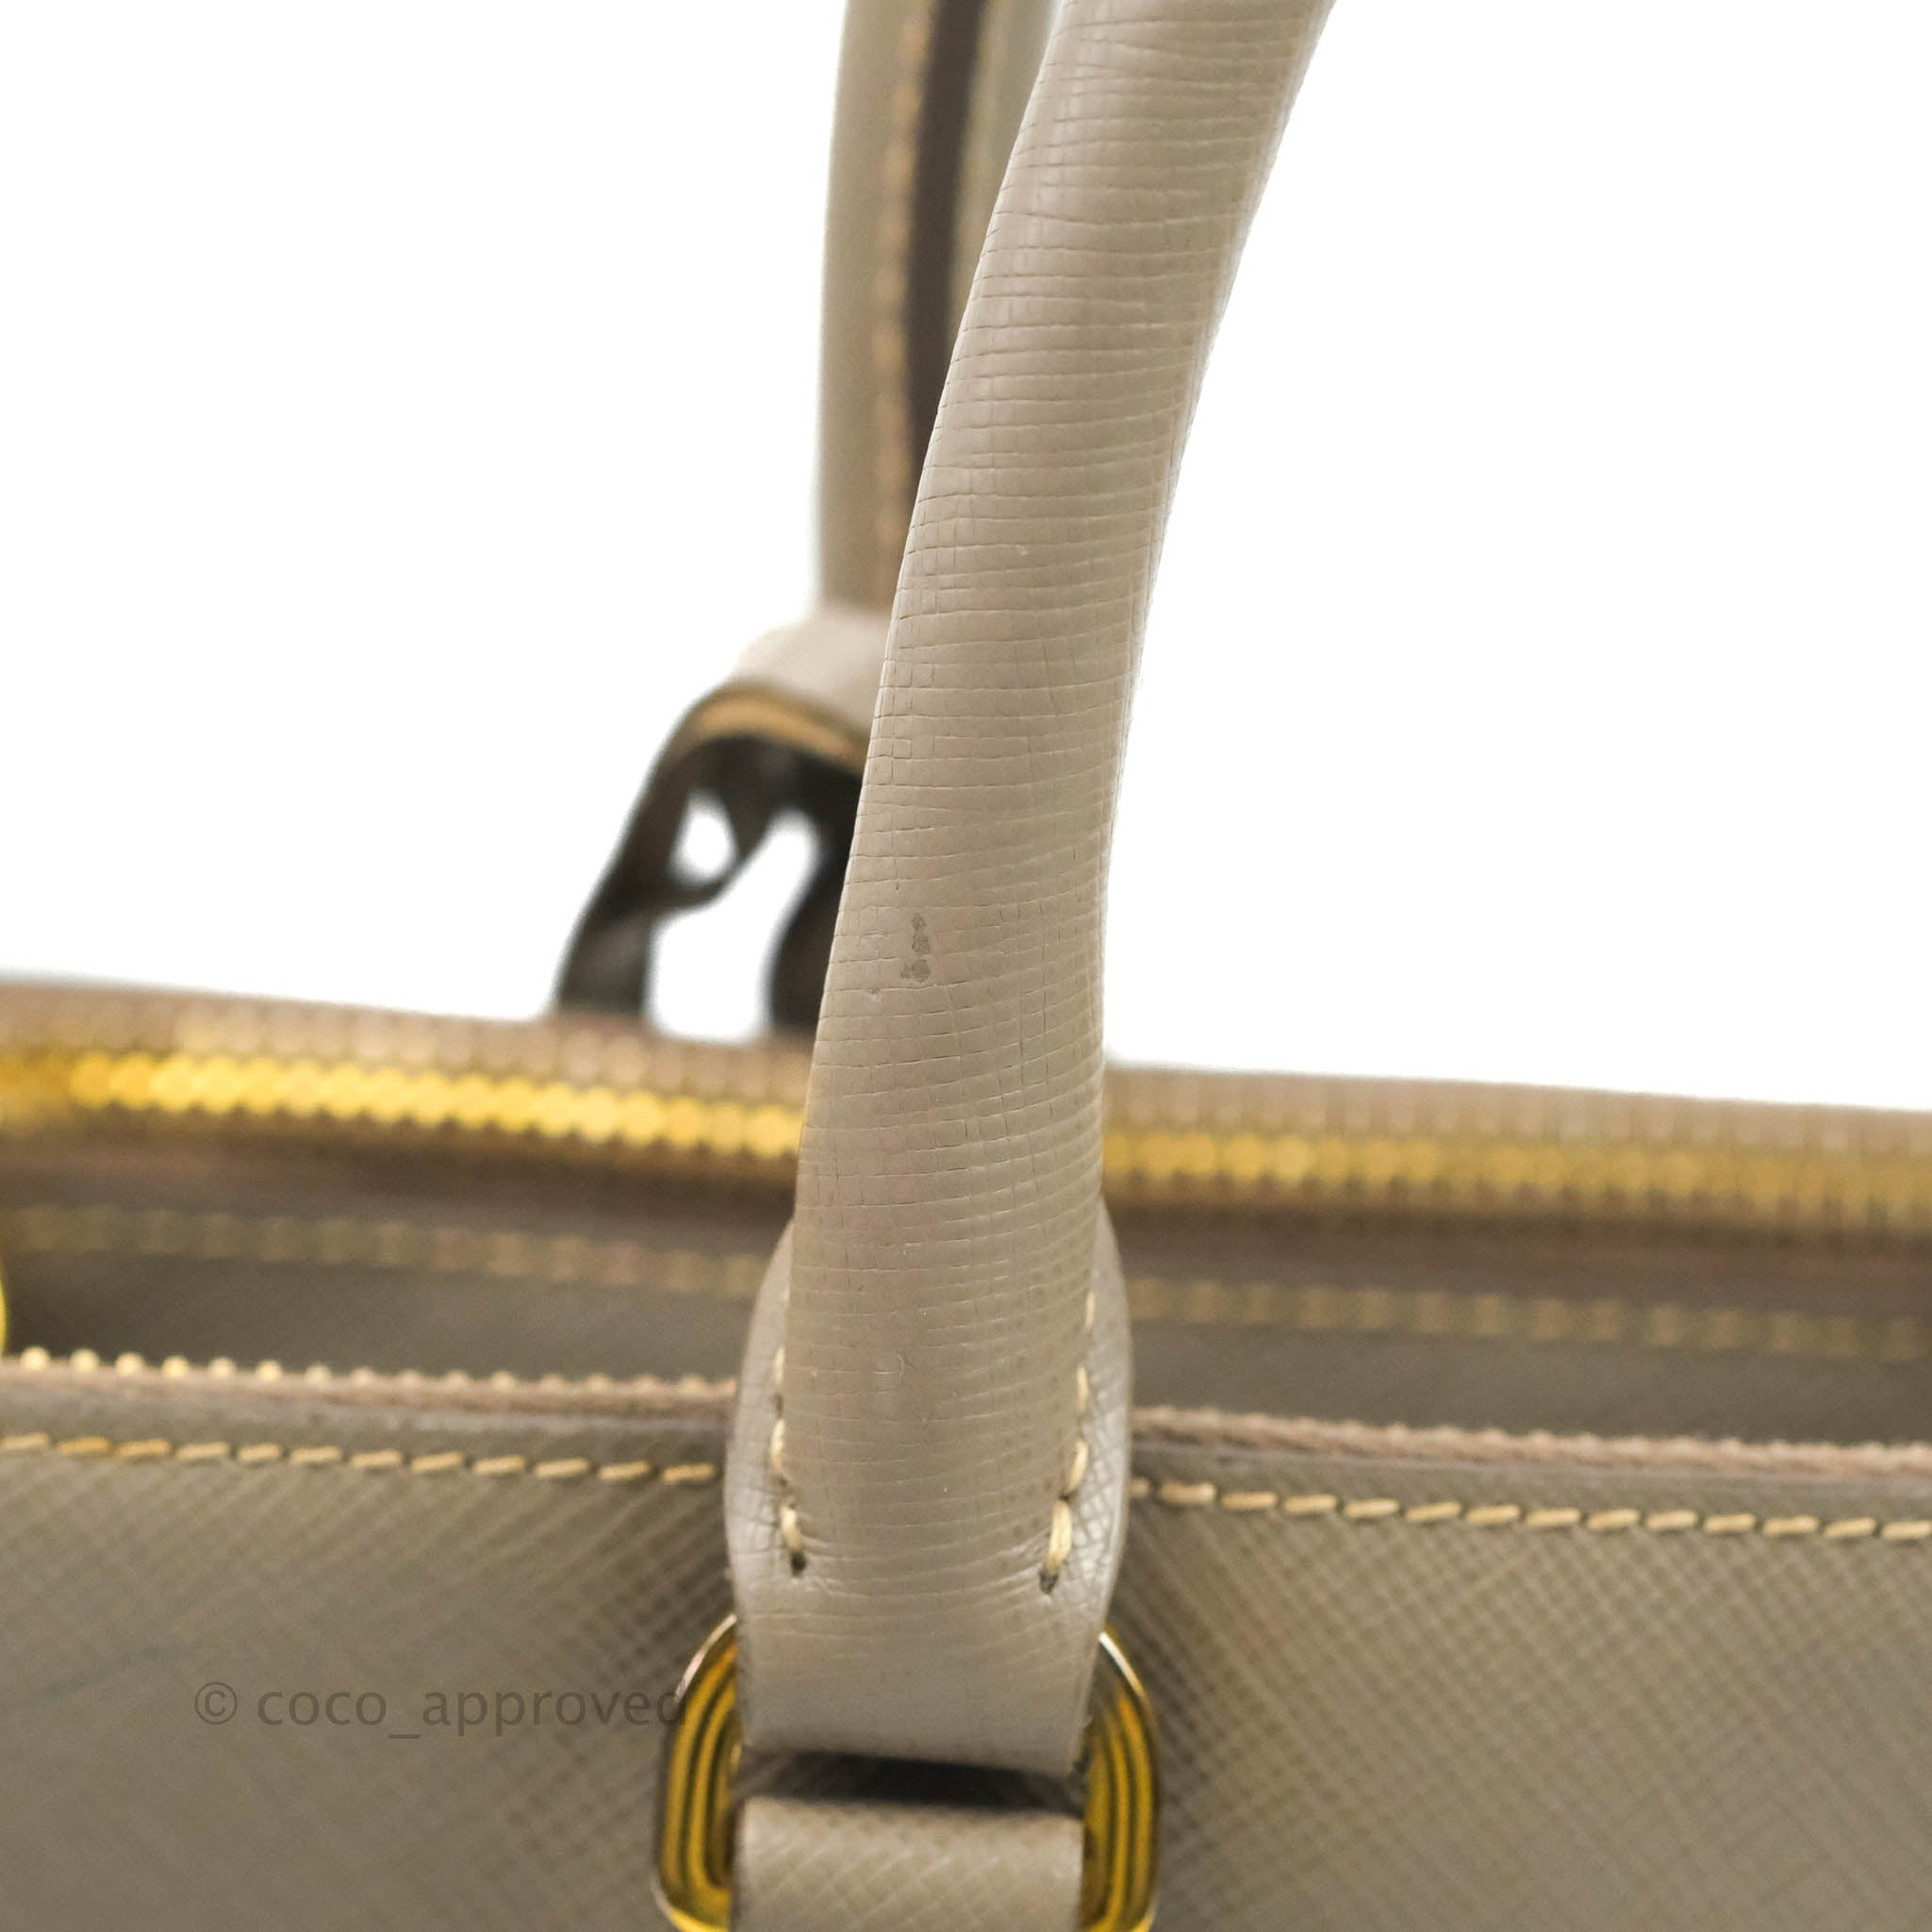 Prada Small Saffiano Lux Galleria Bag Argilla – Coco Approved Studio